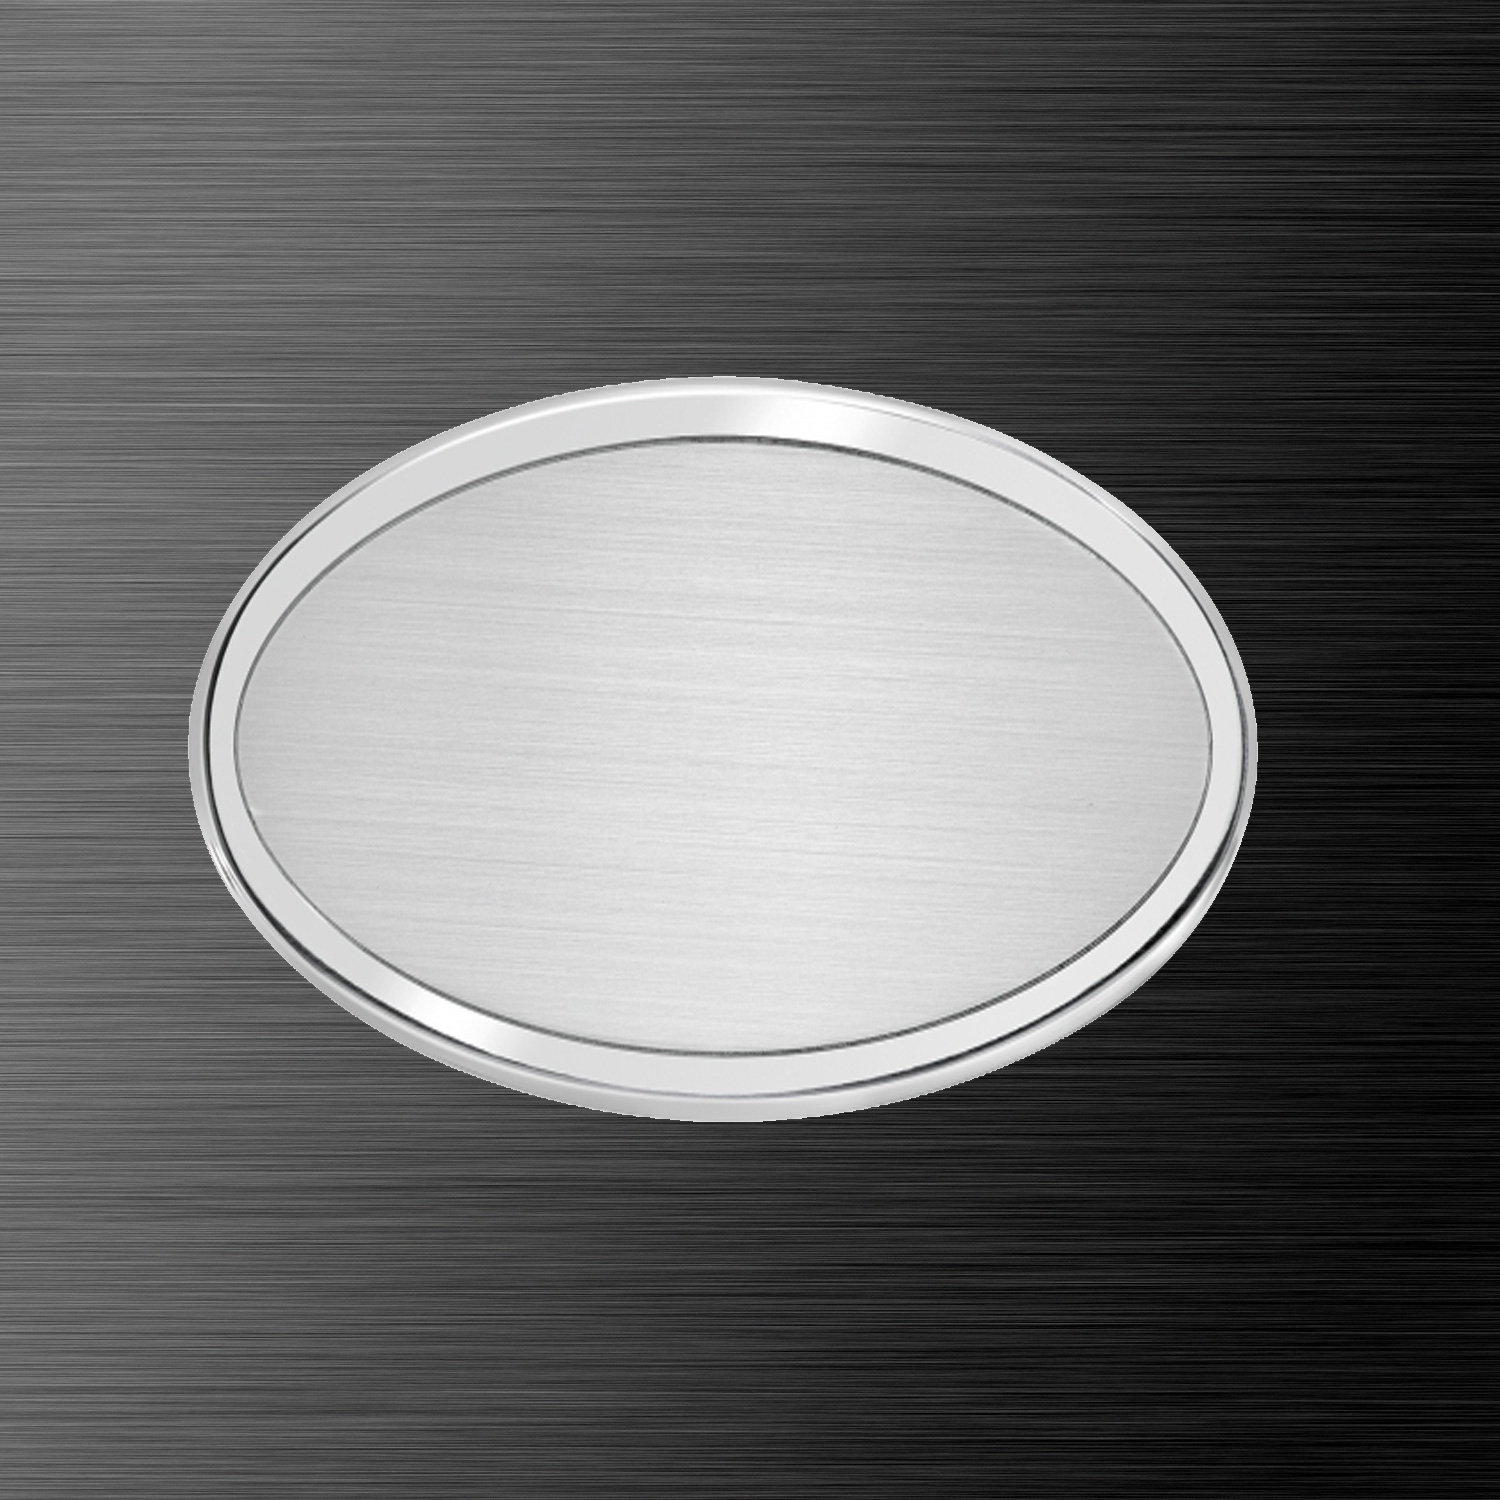 Ovale-alluminio-satinato-bordo-lucido-foto